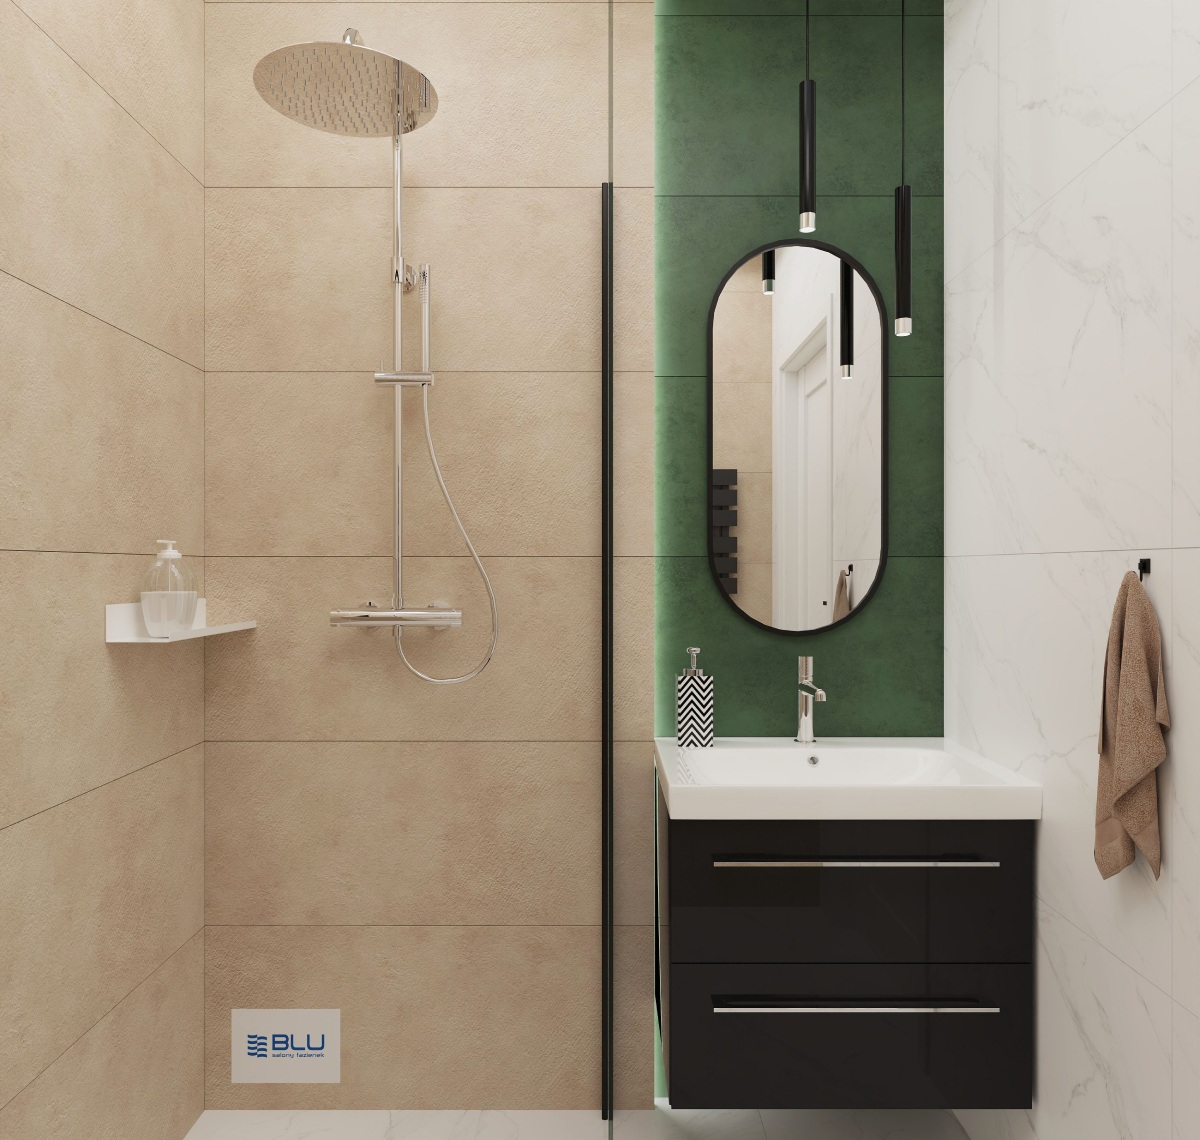 Beżowo - zielona łazienka z otwartą kabiną prysznicową bez brodzika.